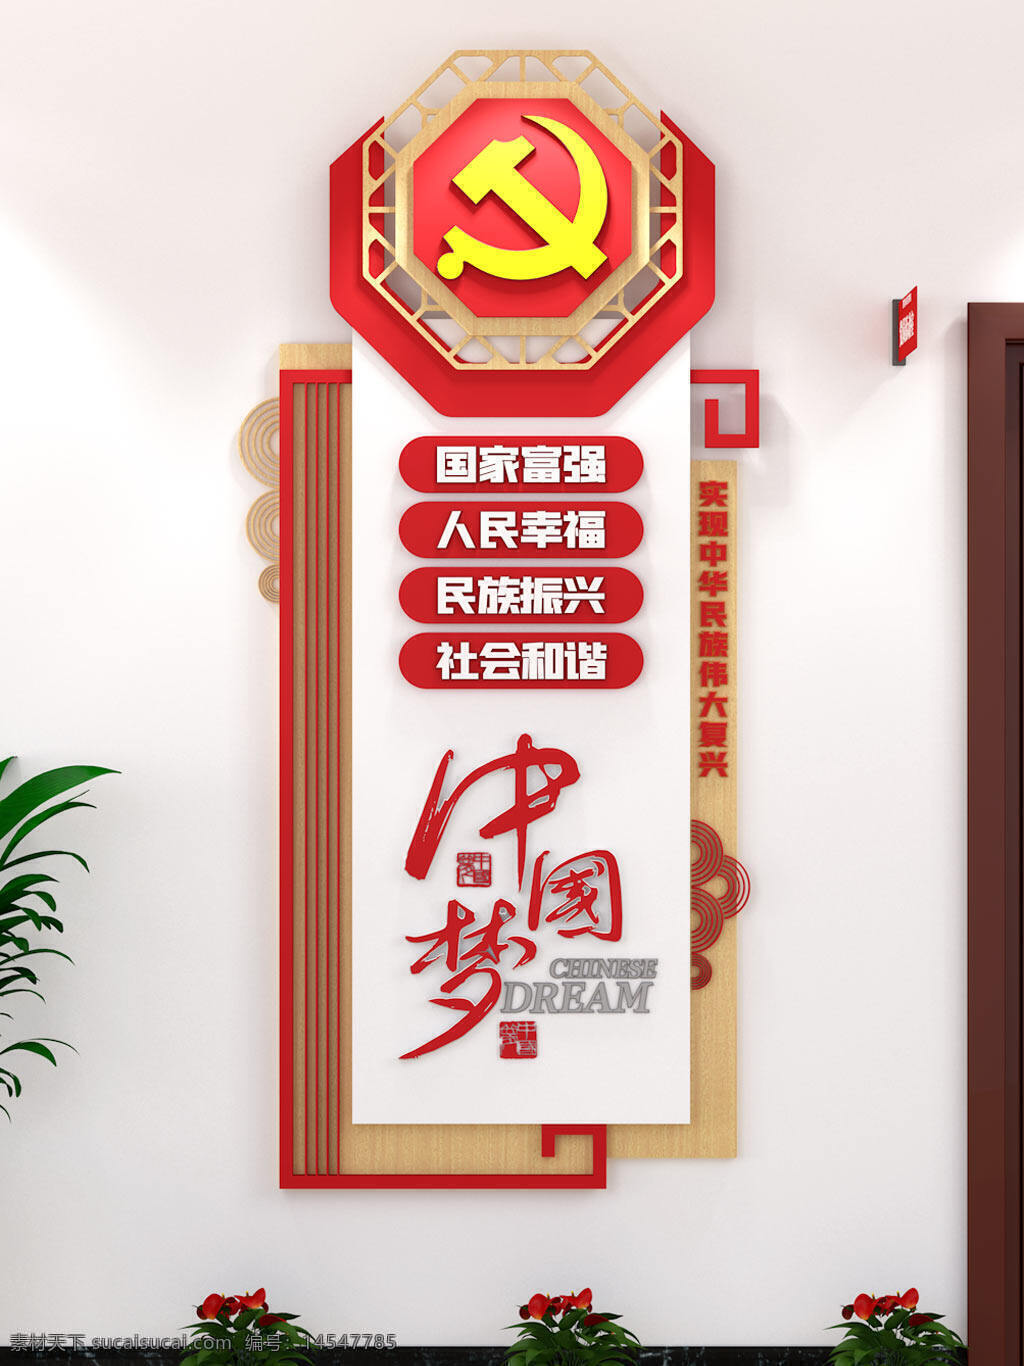 中国梦元素制度牌宣传栏单位竖版党建文化墙 中国梦 元素 制度牌 宣传栏 单位竖版 党建文化墙